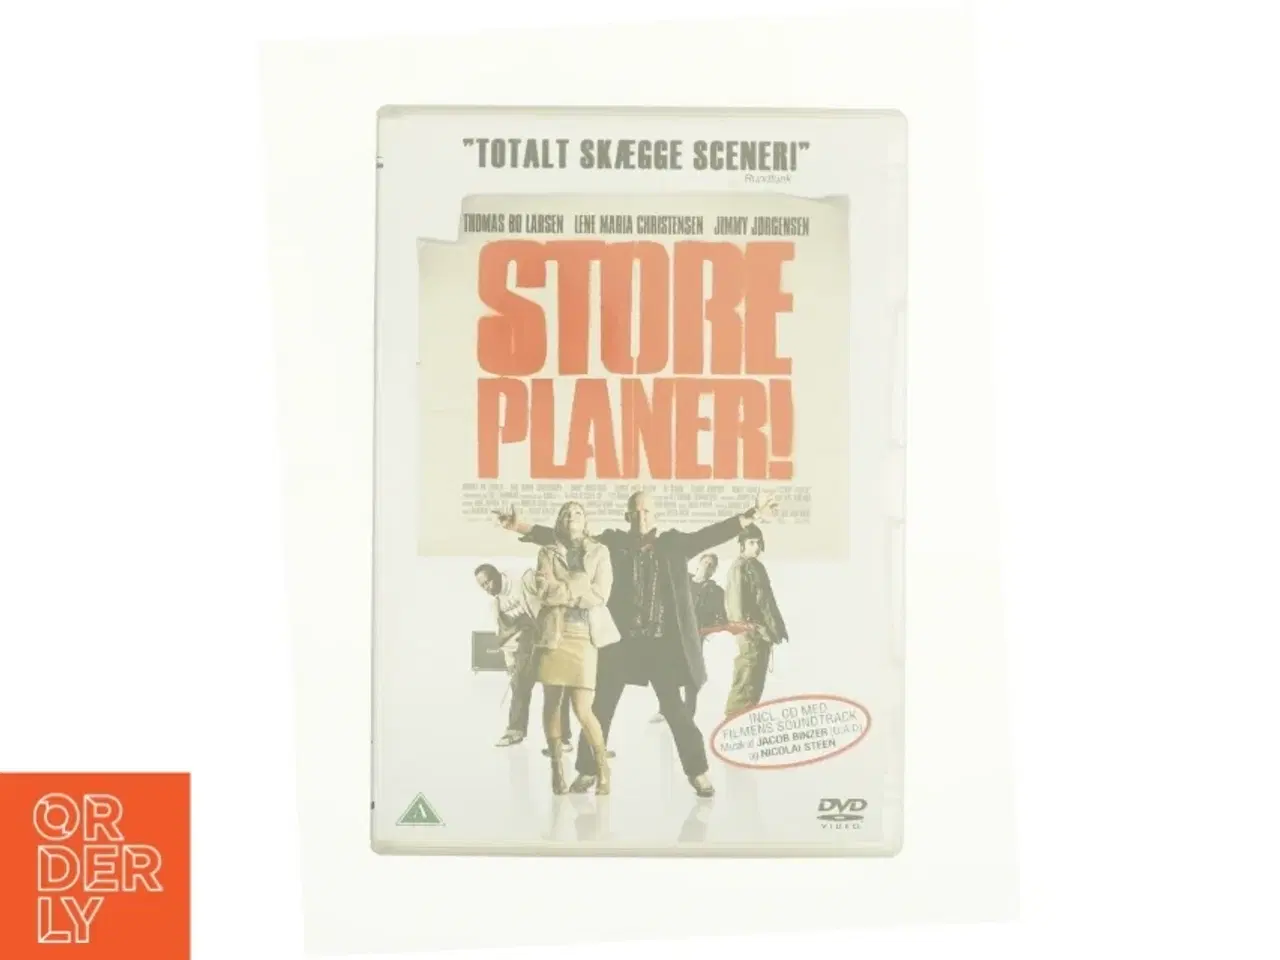 Billede 1 - Store planer! fra DVD